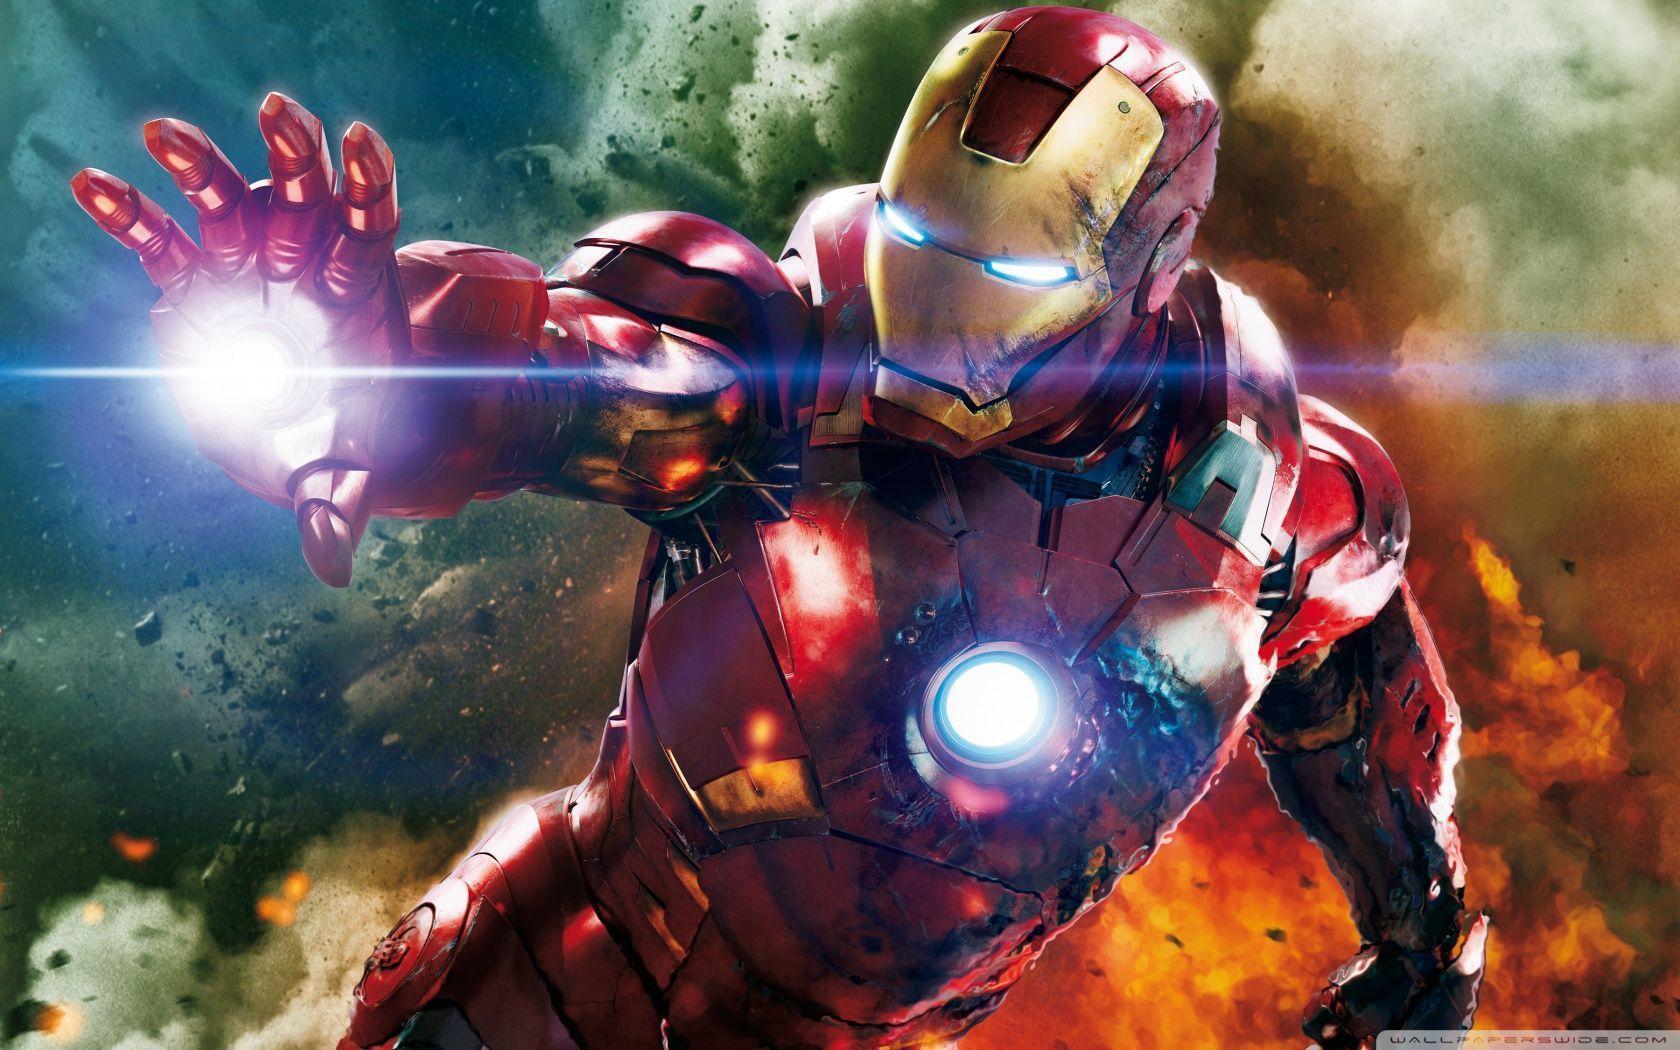 MCU Iron Man vs MCU Ronan the Accuser H2H